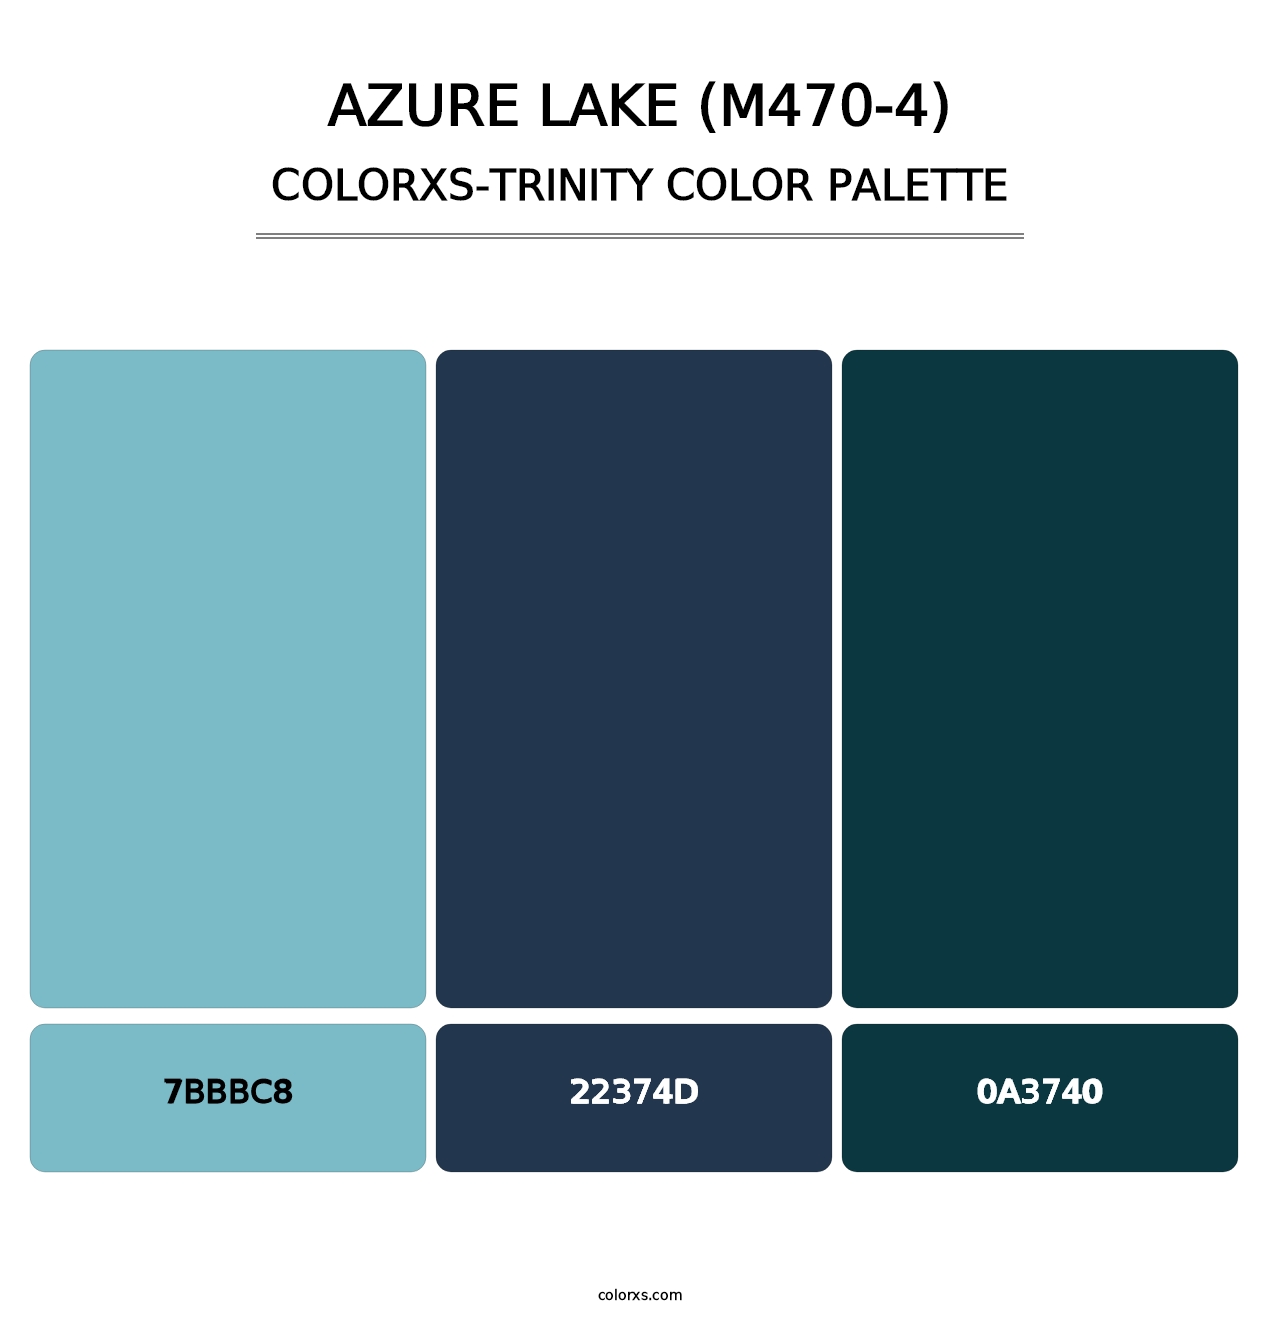 Azure Lake (M470-4) - Colorxs Trinity Palette